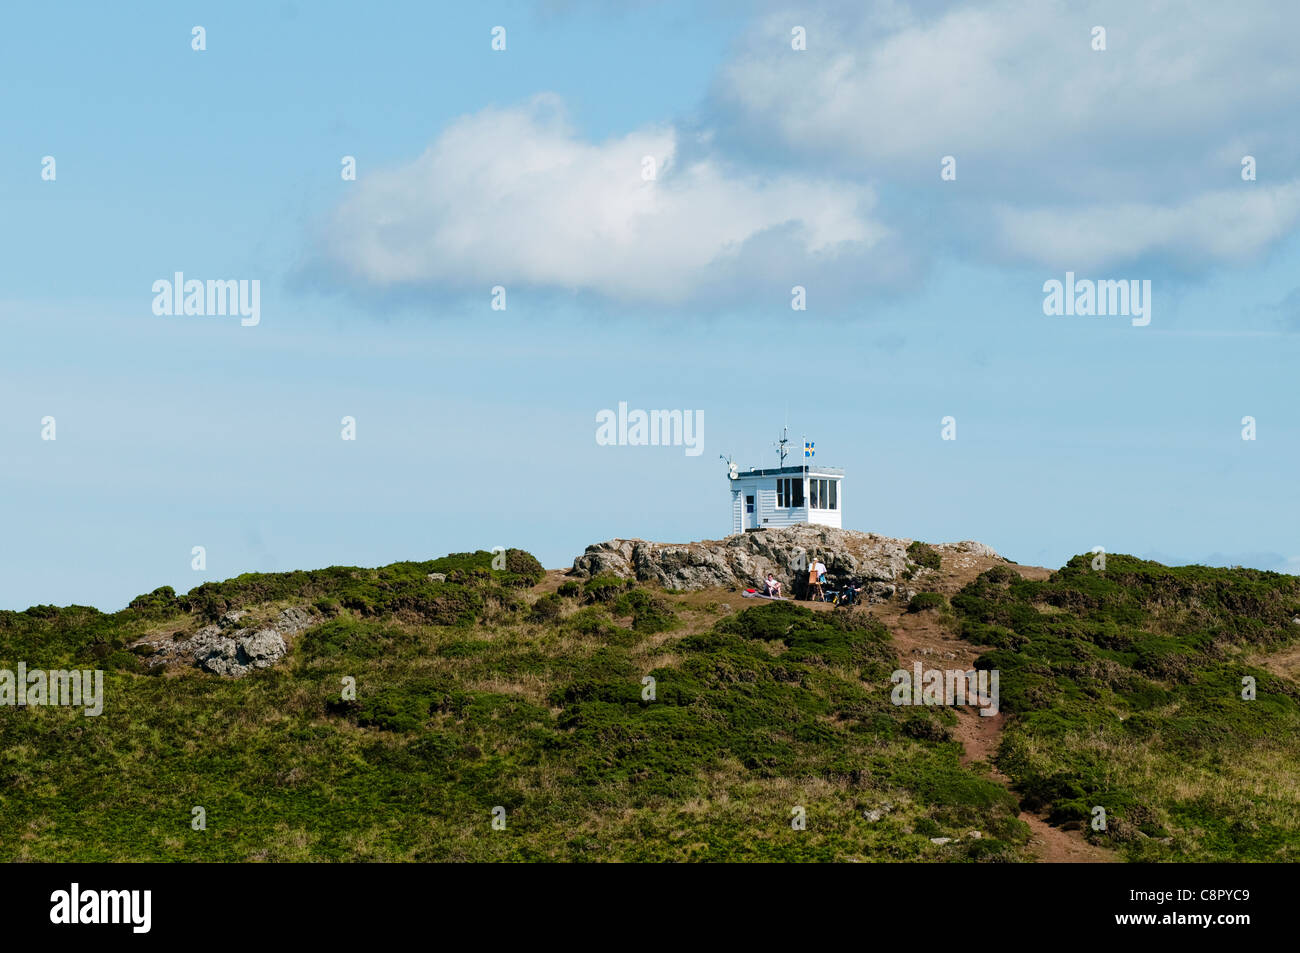 Ehemaligen Küstenwache-Hütte in der Nähe von Martins Haven, South Pembrokeshire, Wales, Vereinigtes Königreich Stockfoto